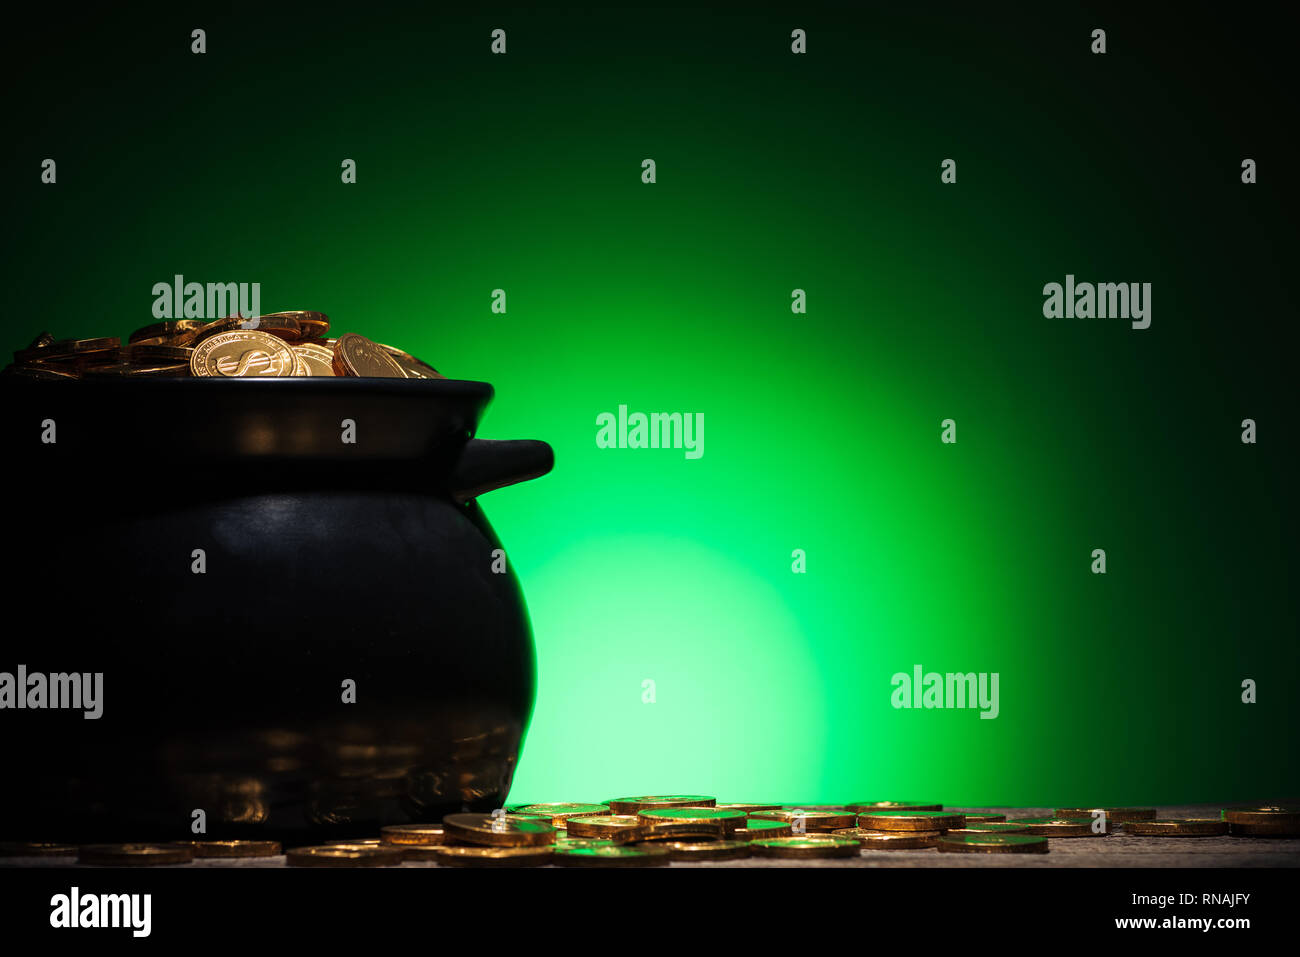 Topf mit goldenen Münzen auf st patricks day auf grünem Hintergrund Stockfoto